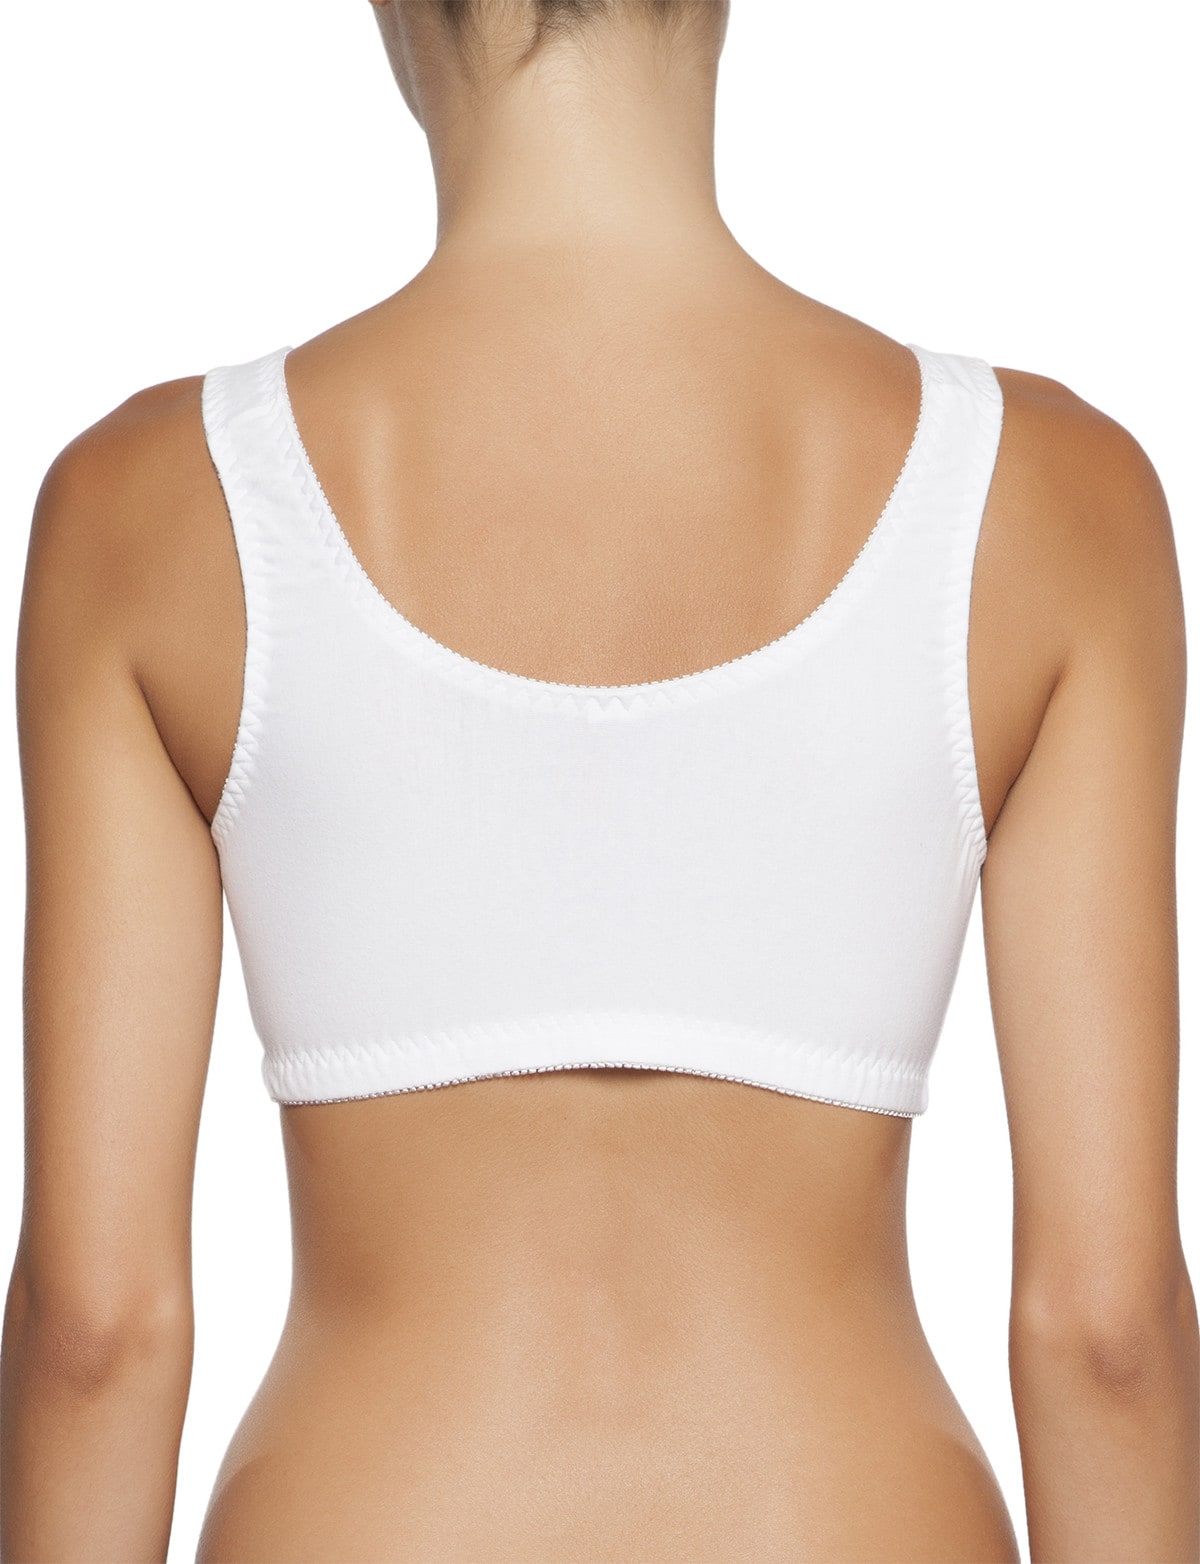 Women Sports Bra Push Up Fitness Bras One Shoulder Shockproof Yoga Bra  Black White Yoga Running Bra Sexy Vest